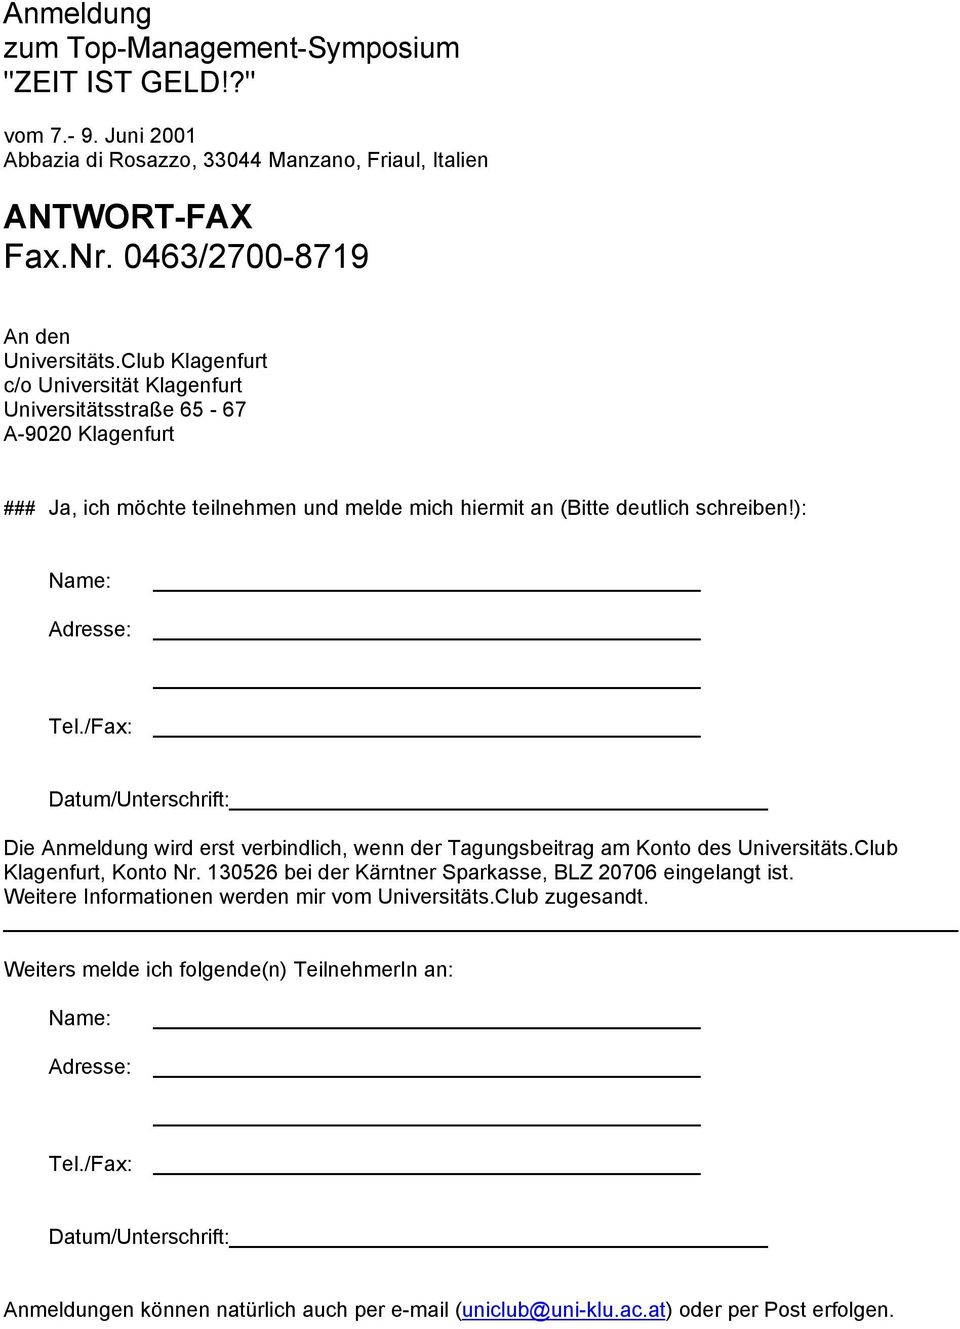 /Fax: Datum/Unterschrift: Die Anmeldung wird erst verbindlich, wenn der Tagungsbeitrag am Konto des Universitäts.Club Klagenfurt, Konto Nr. 130526 bei der Kärntner Sparkasse, BLZ 20706 eingelangt ist.